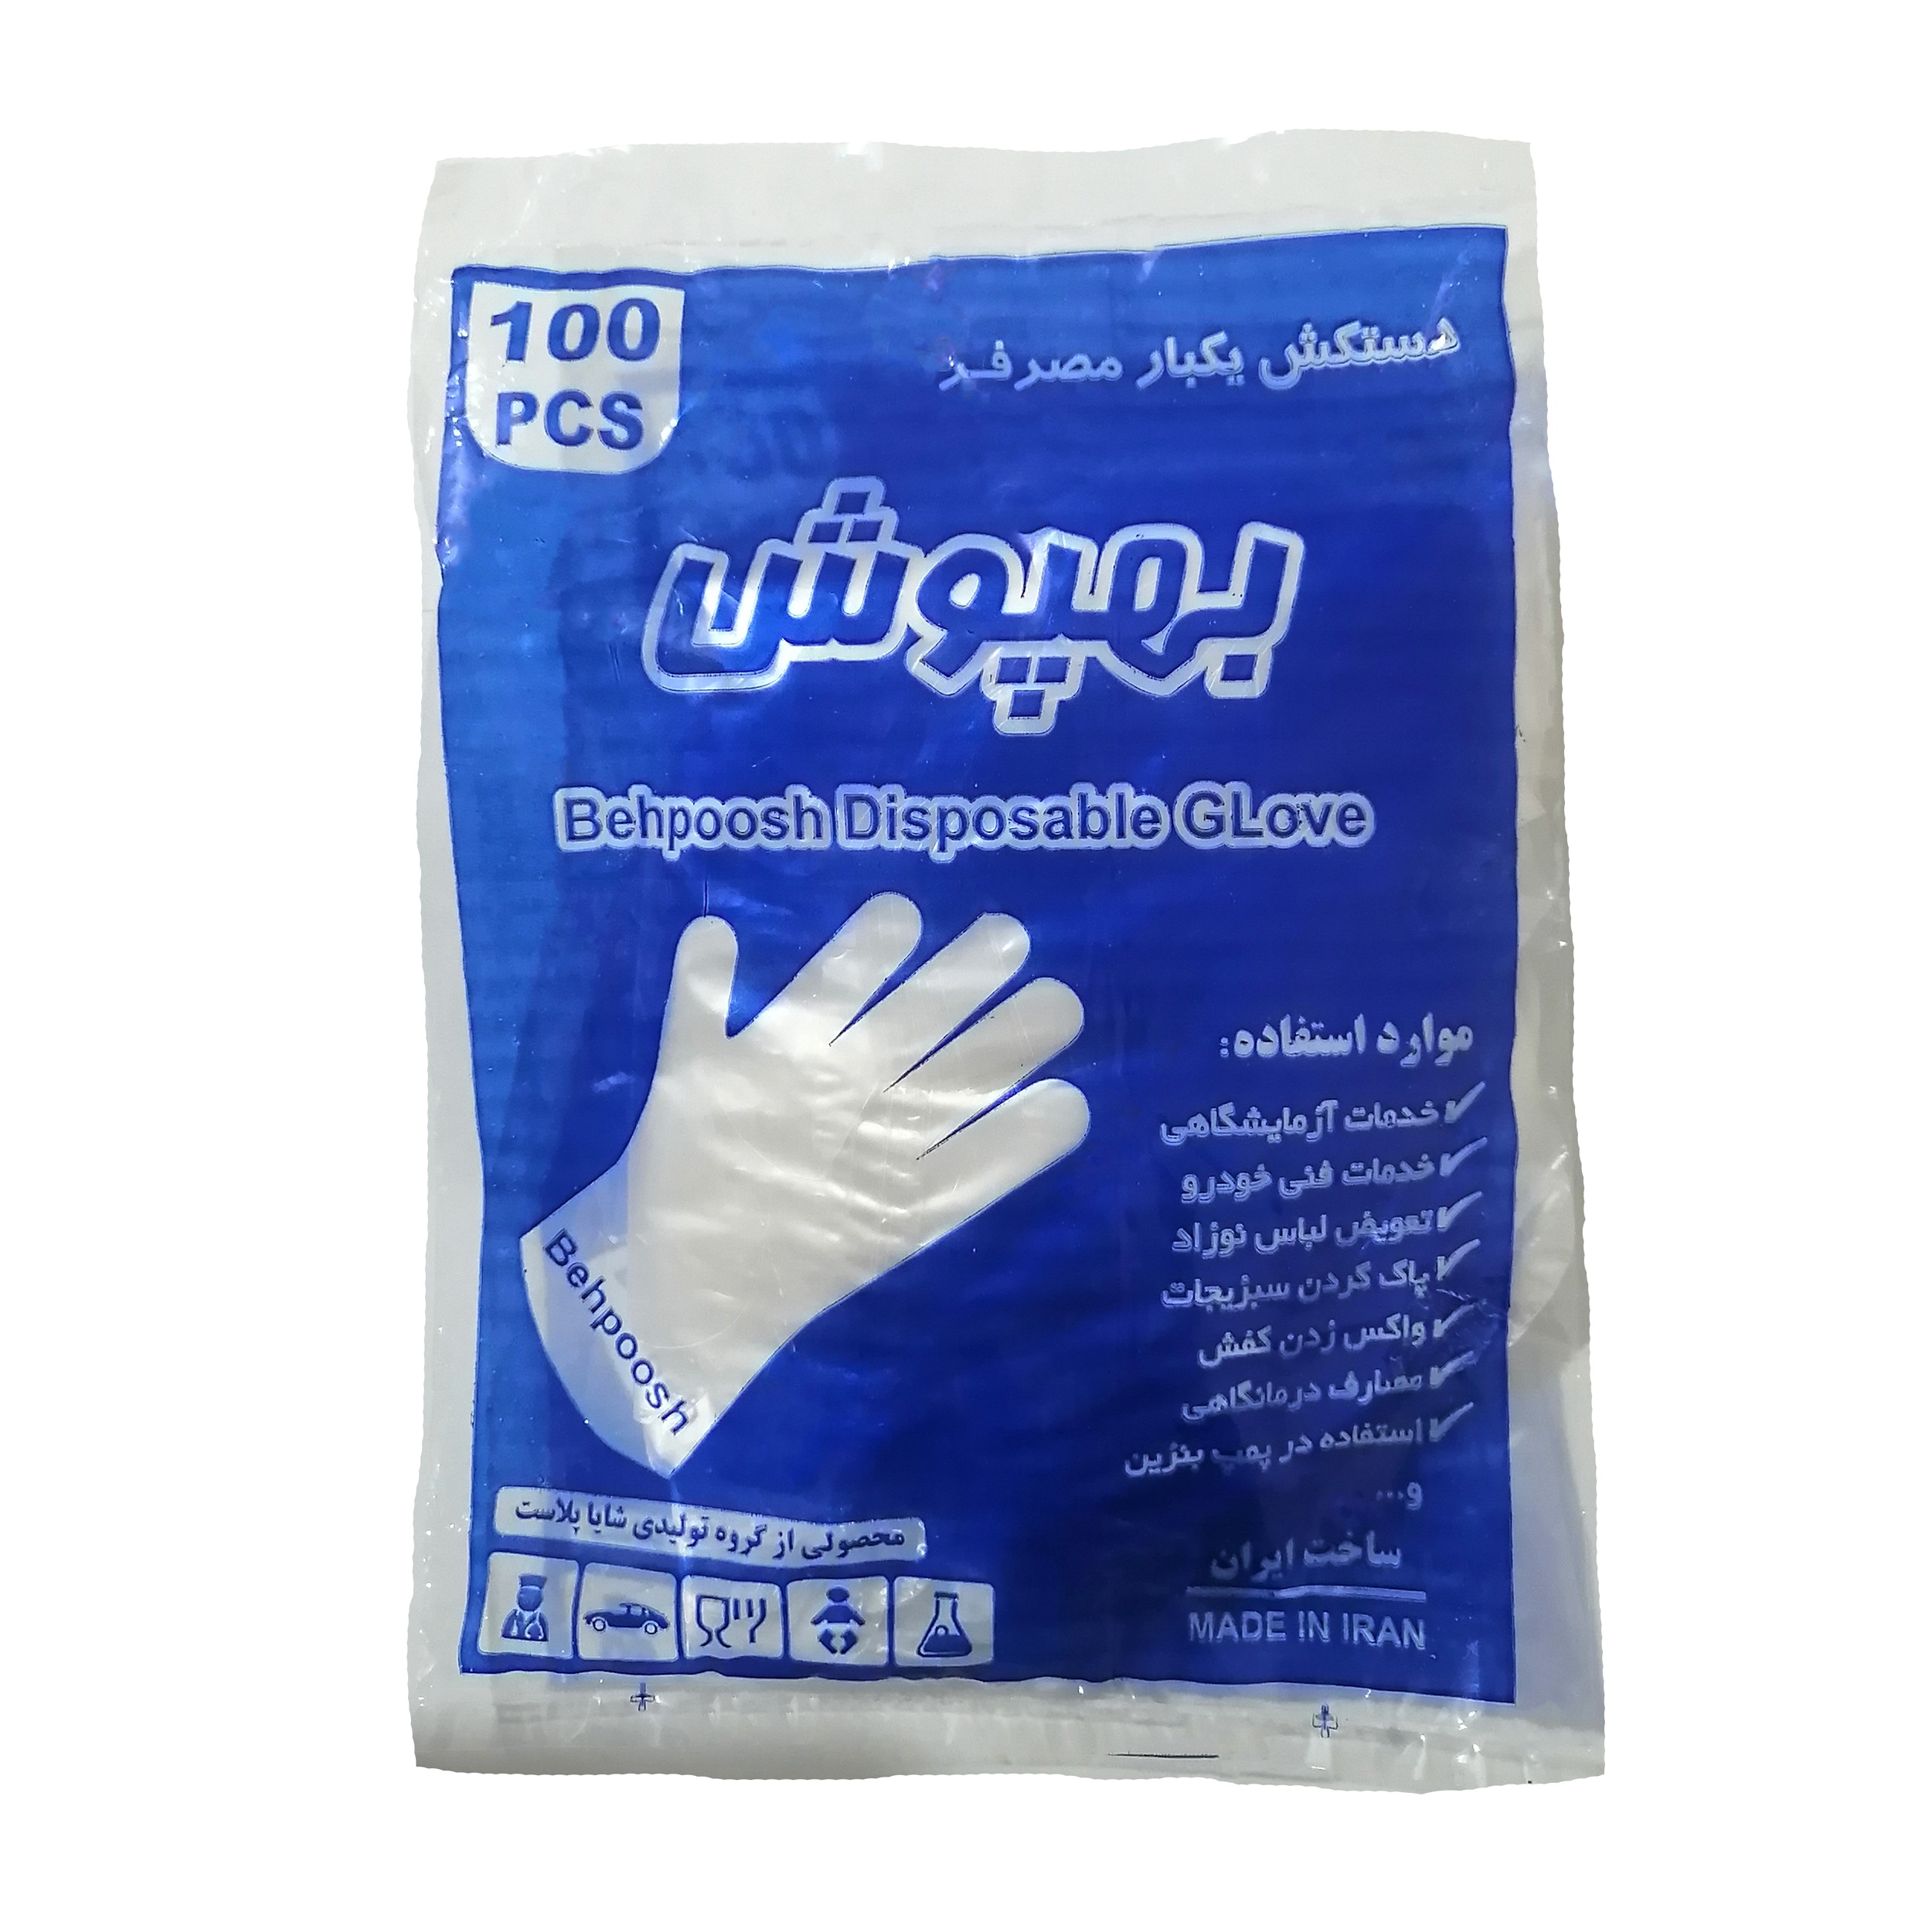 دستکش یکبار مصرف بهپوش کد 03 بسته 100 عددی